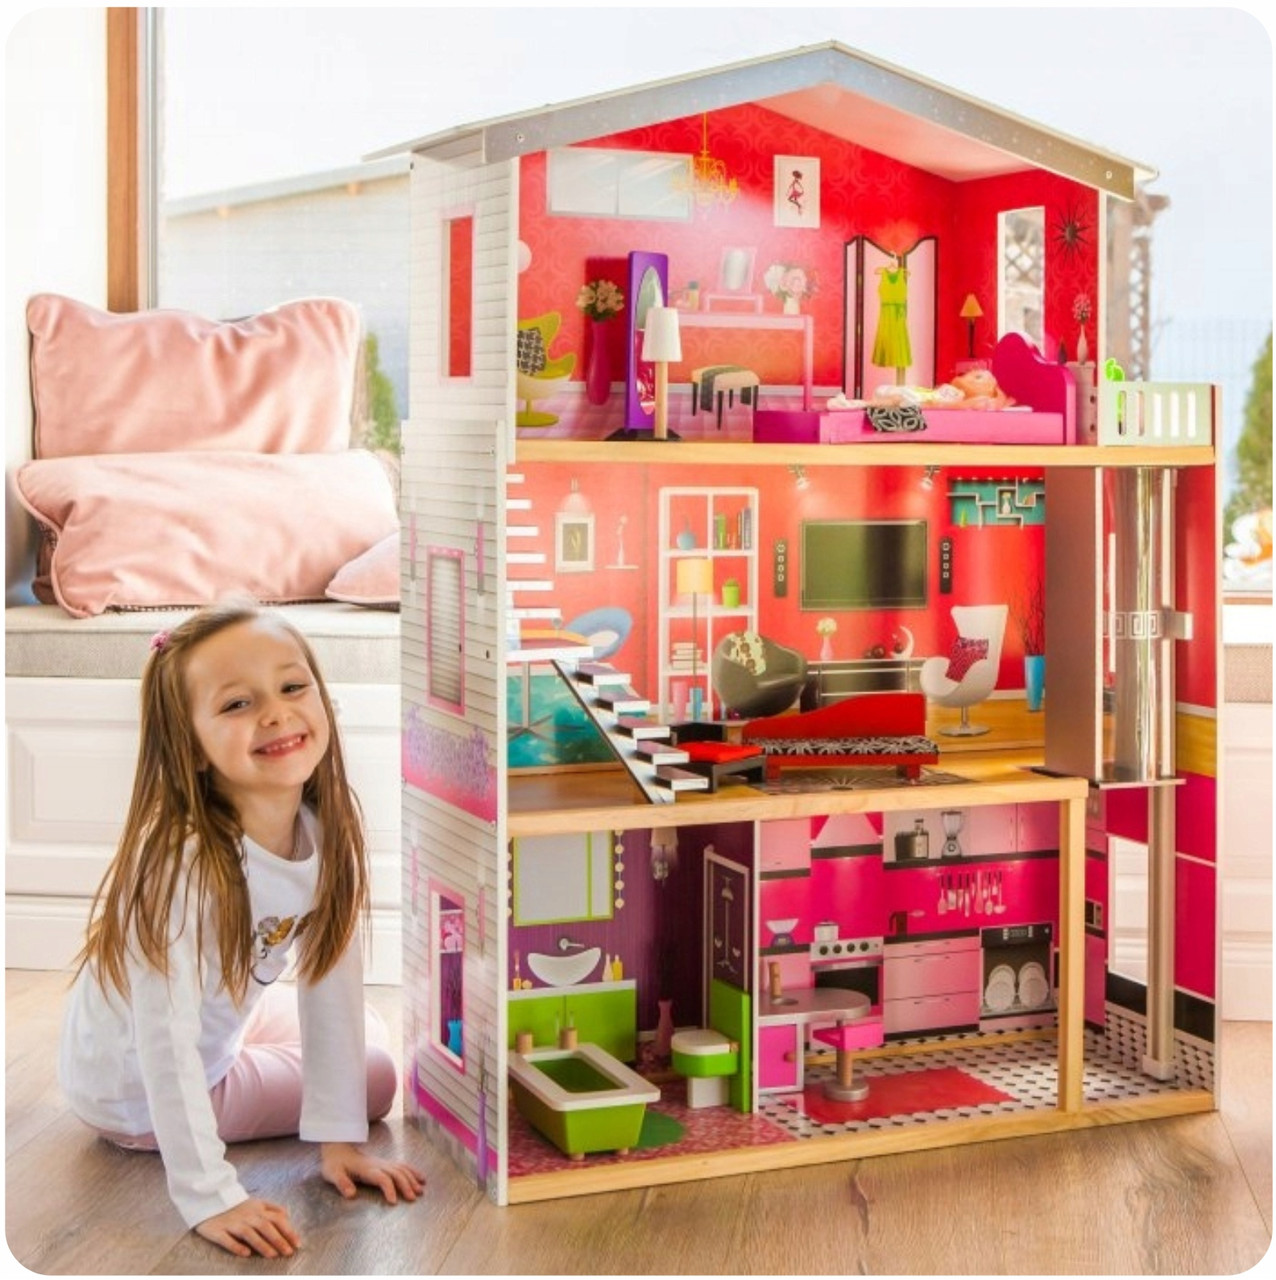 Ляльковий будиночок для барбі  - Malibu ECOTOYS Residence 4118+лялька барбі в подарунок!